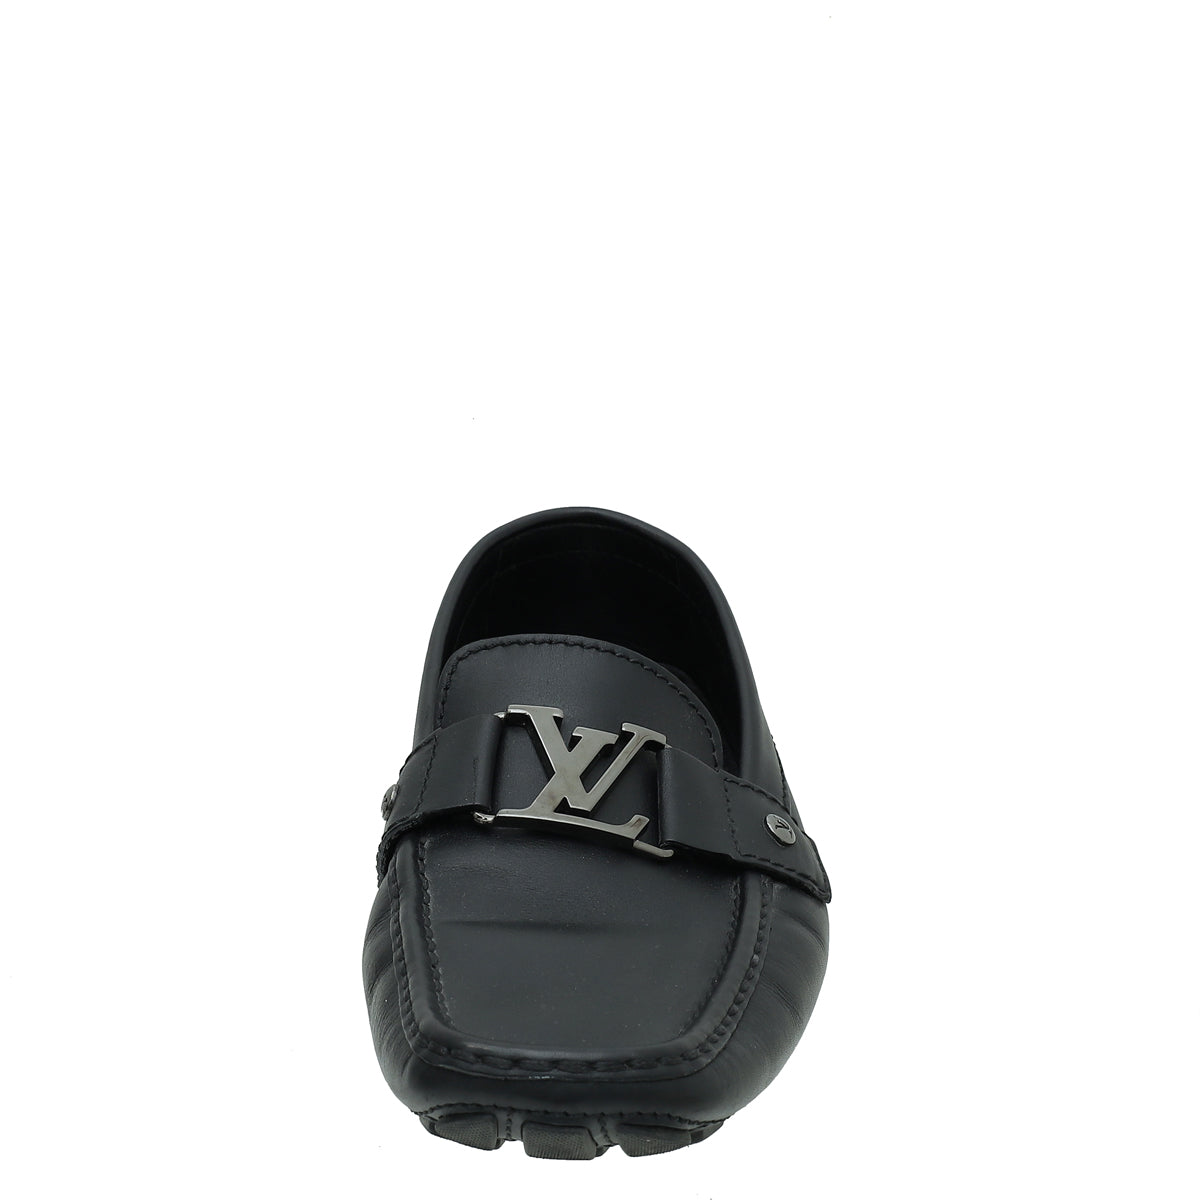 Louis Vuitton, Shoes, Louise Vuitton Monte Carlo Mocassin